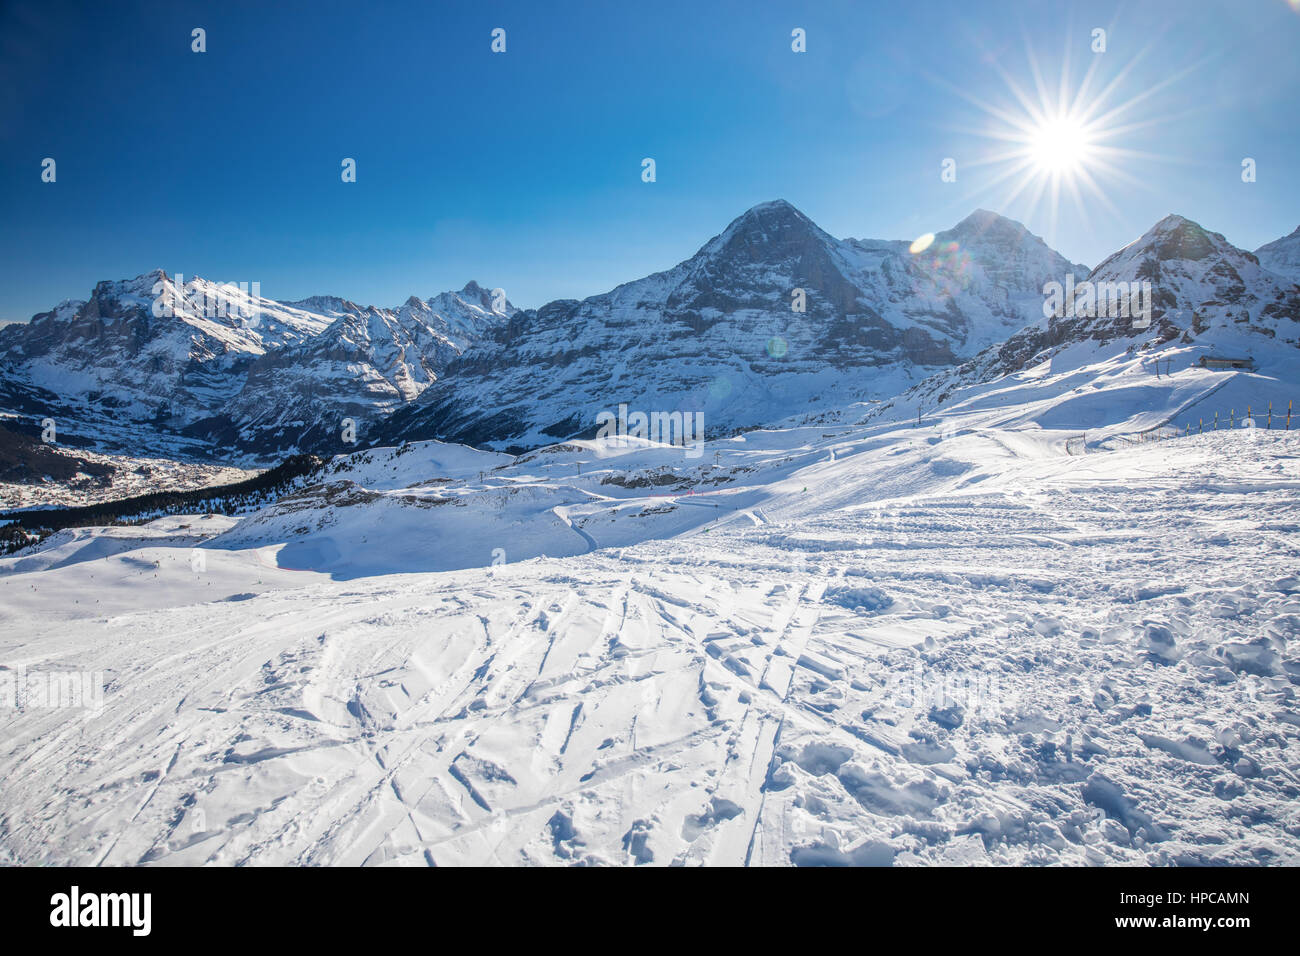 Jungfrau ski Resort mit berühmten Eiger, Monch und Jungfrau Gipfeln in Grindelwald, Berner Oberland, Schweiz, Schweizer Alpen. Stockfoto